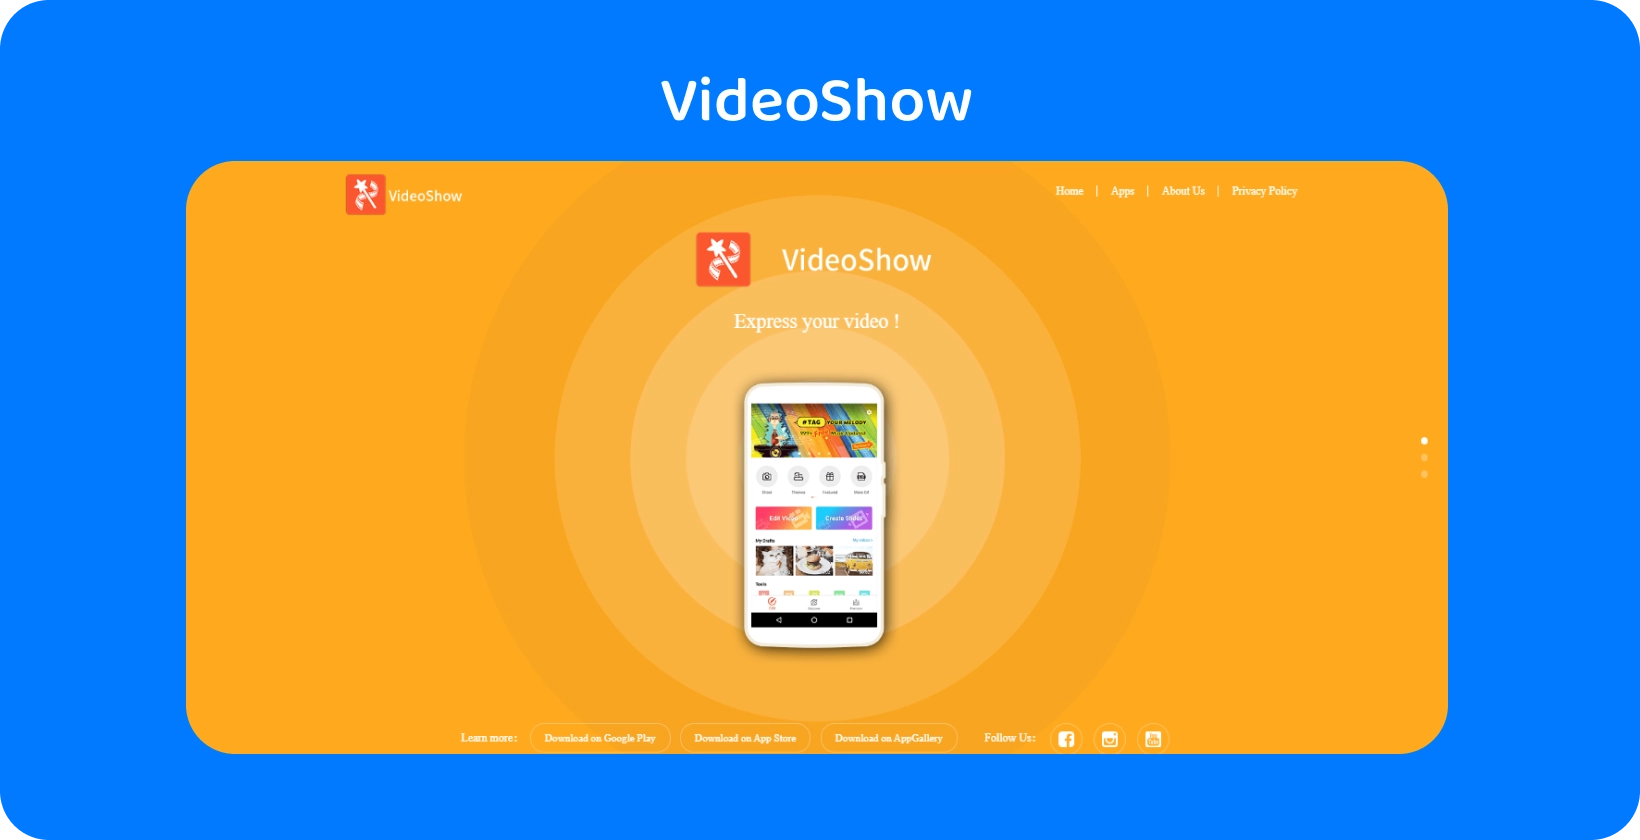 VideoShow appgrensesnitt på en skjerm, og tilbyr enkle videoredigeringsverktøy og funksjoner på en levende oransje bakgrunn.